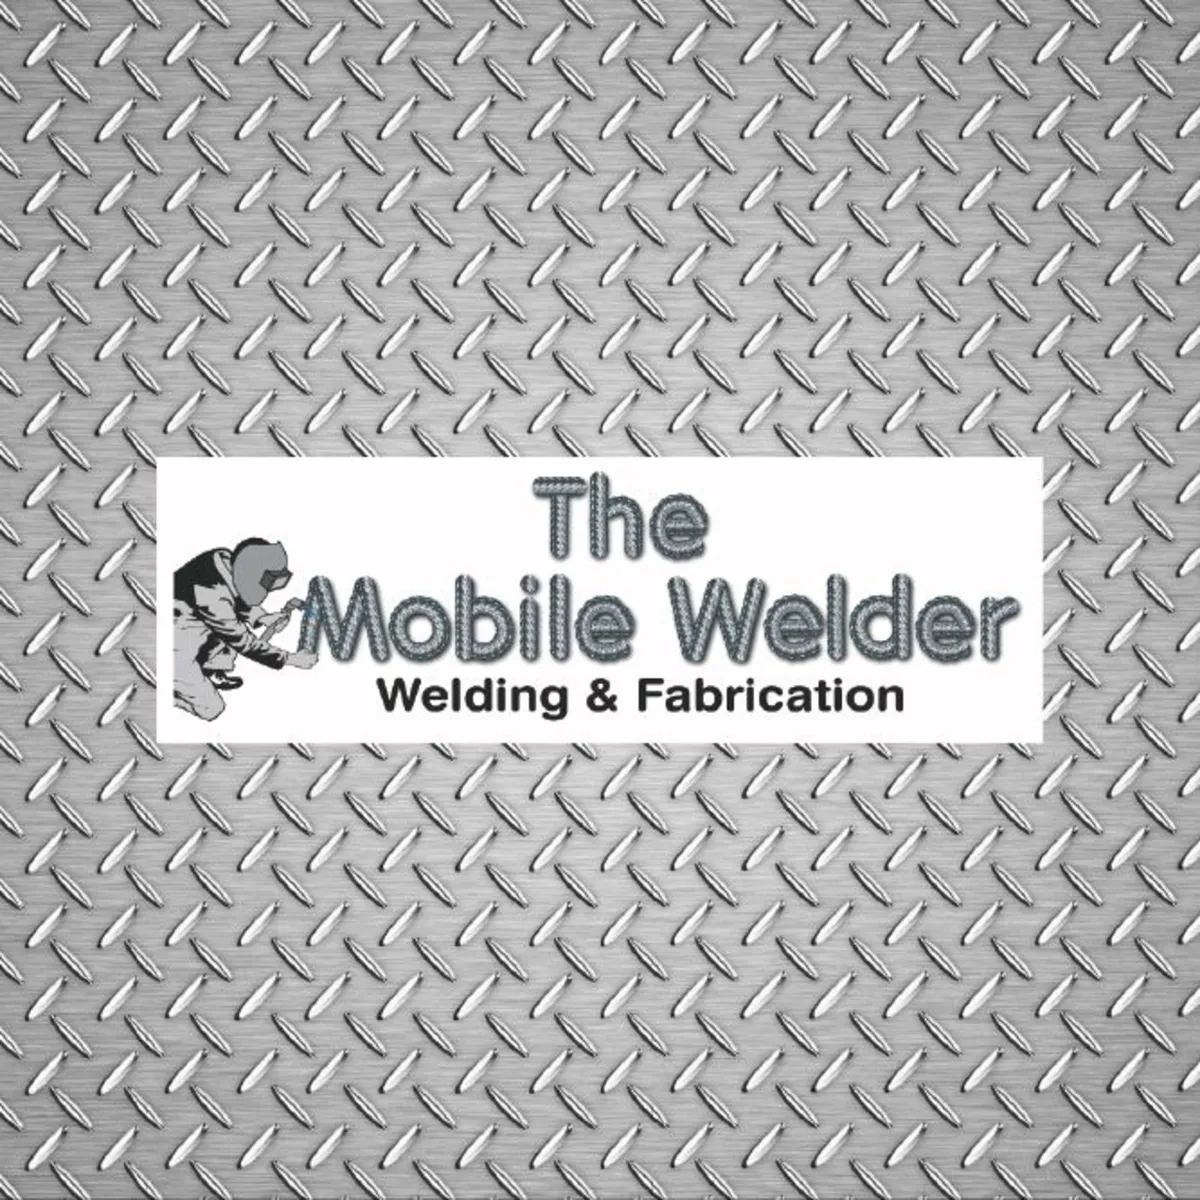 Mobile welder - Image 1